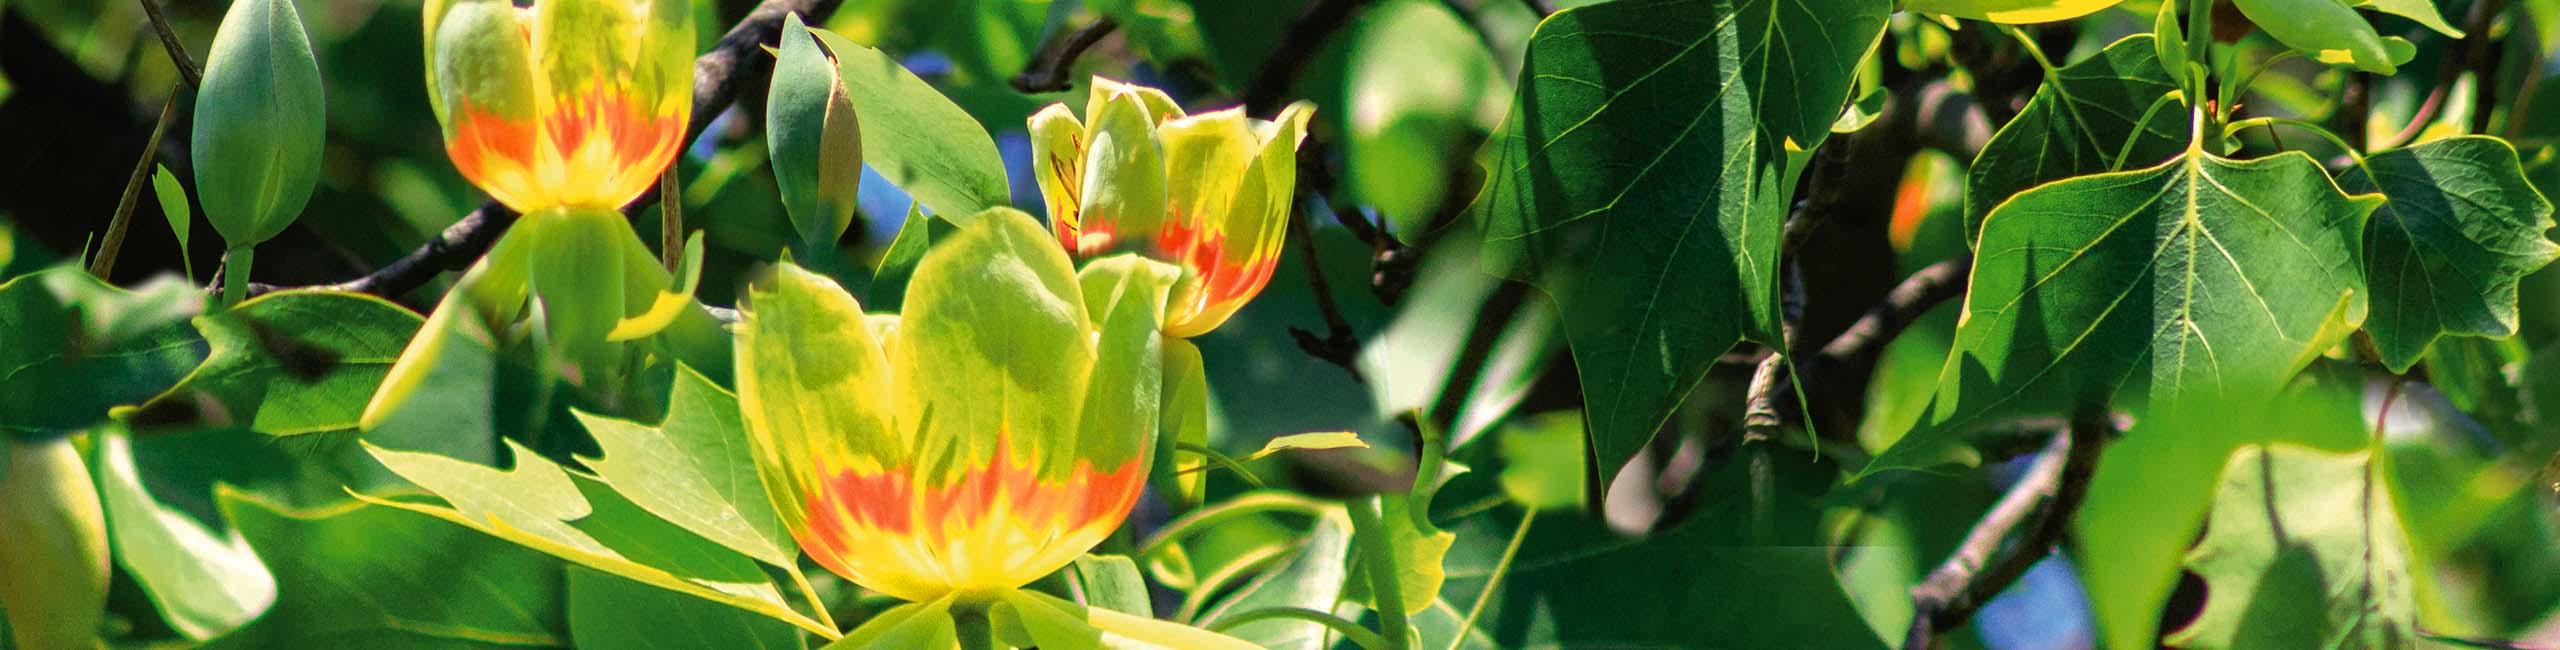 Tulpenbaum Tulipo